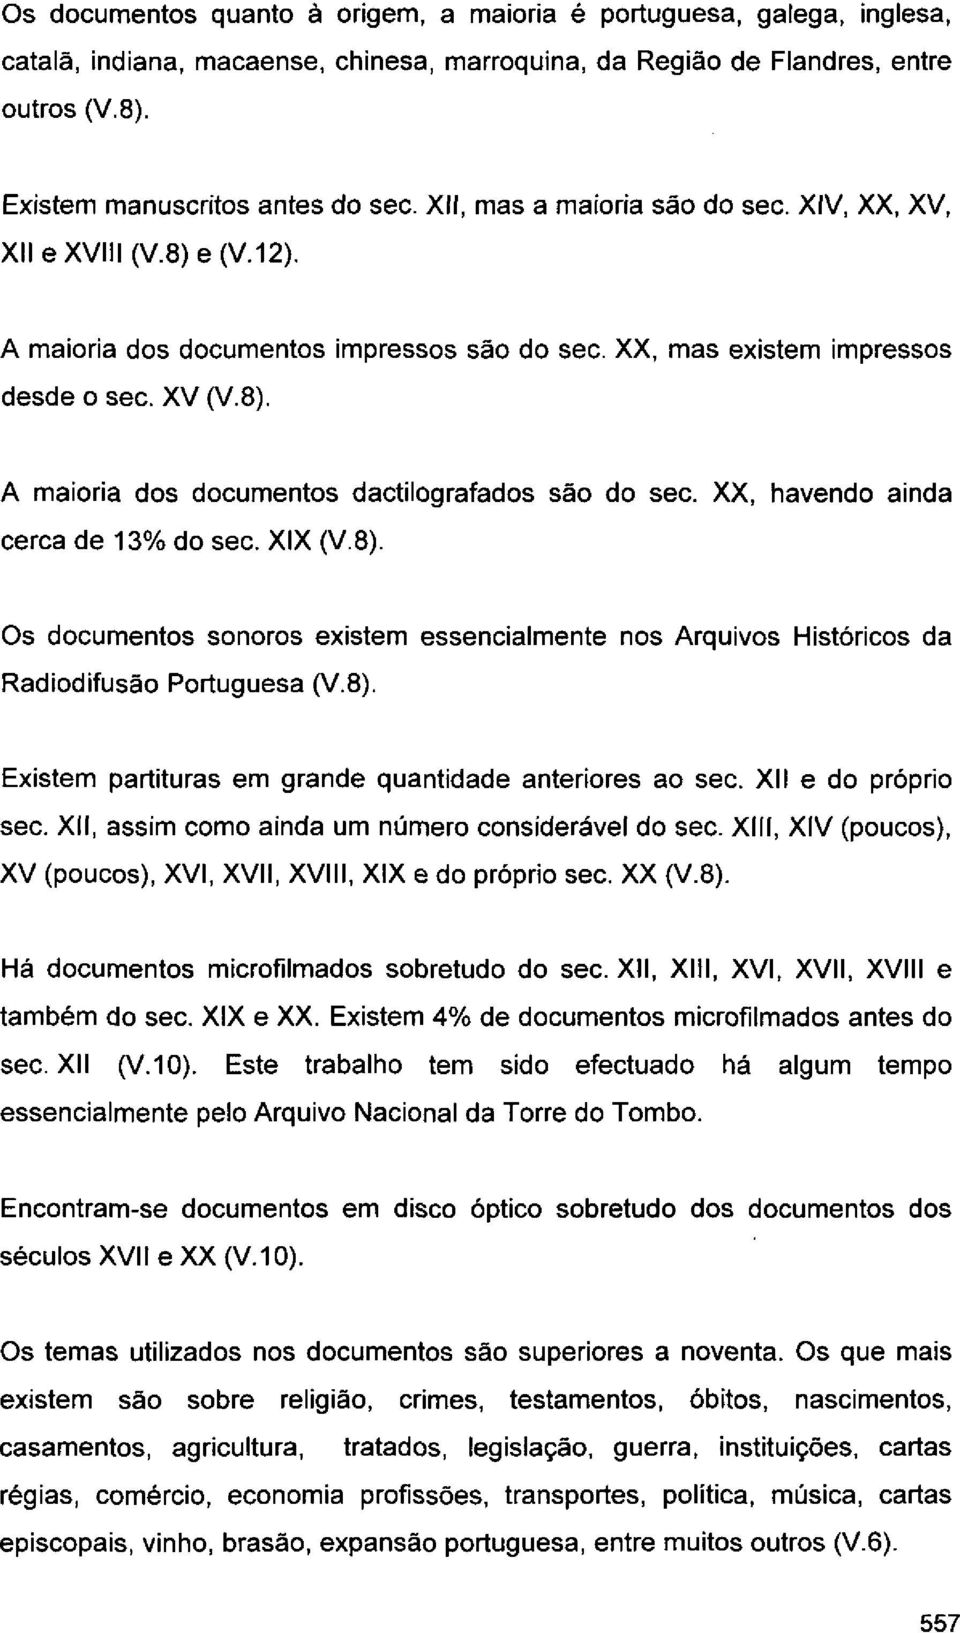 XX, havendo ainda cerca de 13% do seo. XIX (V.8). Os documentos sonoros existem essencialmente nos Arquivos Históricos da Rad odifusáo Portuguesa (VB).